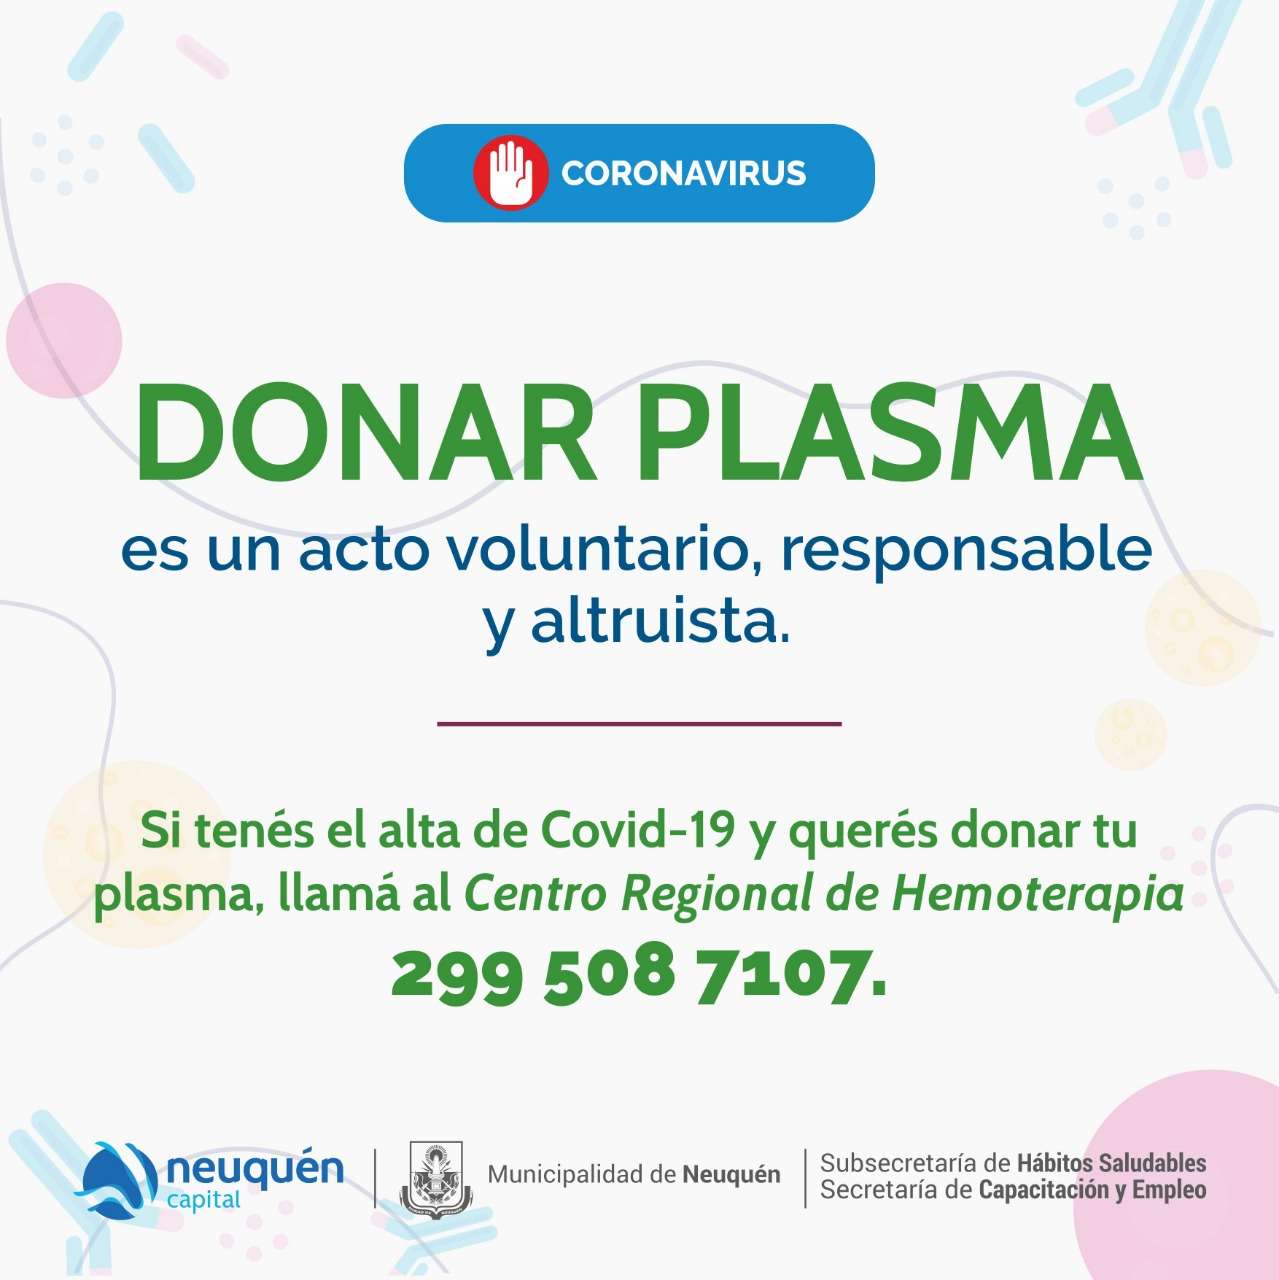 Donar plasma es un acto voluntario, responsable y altruista.